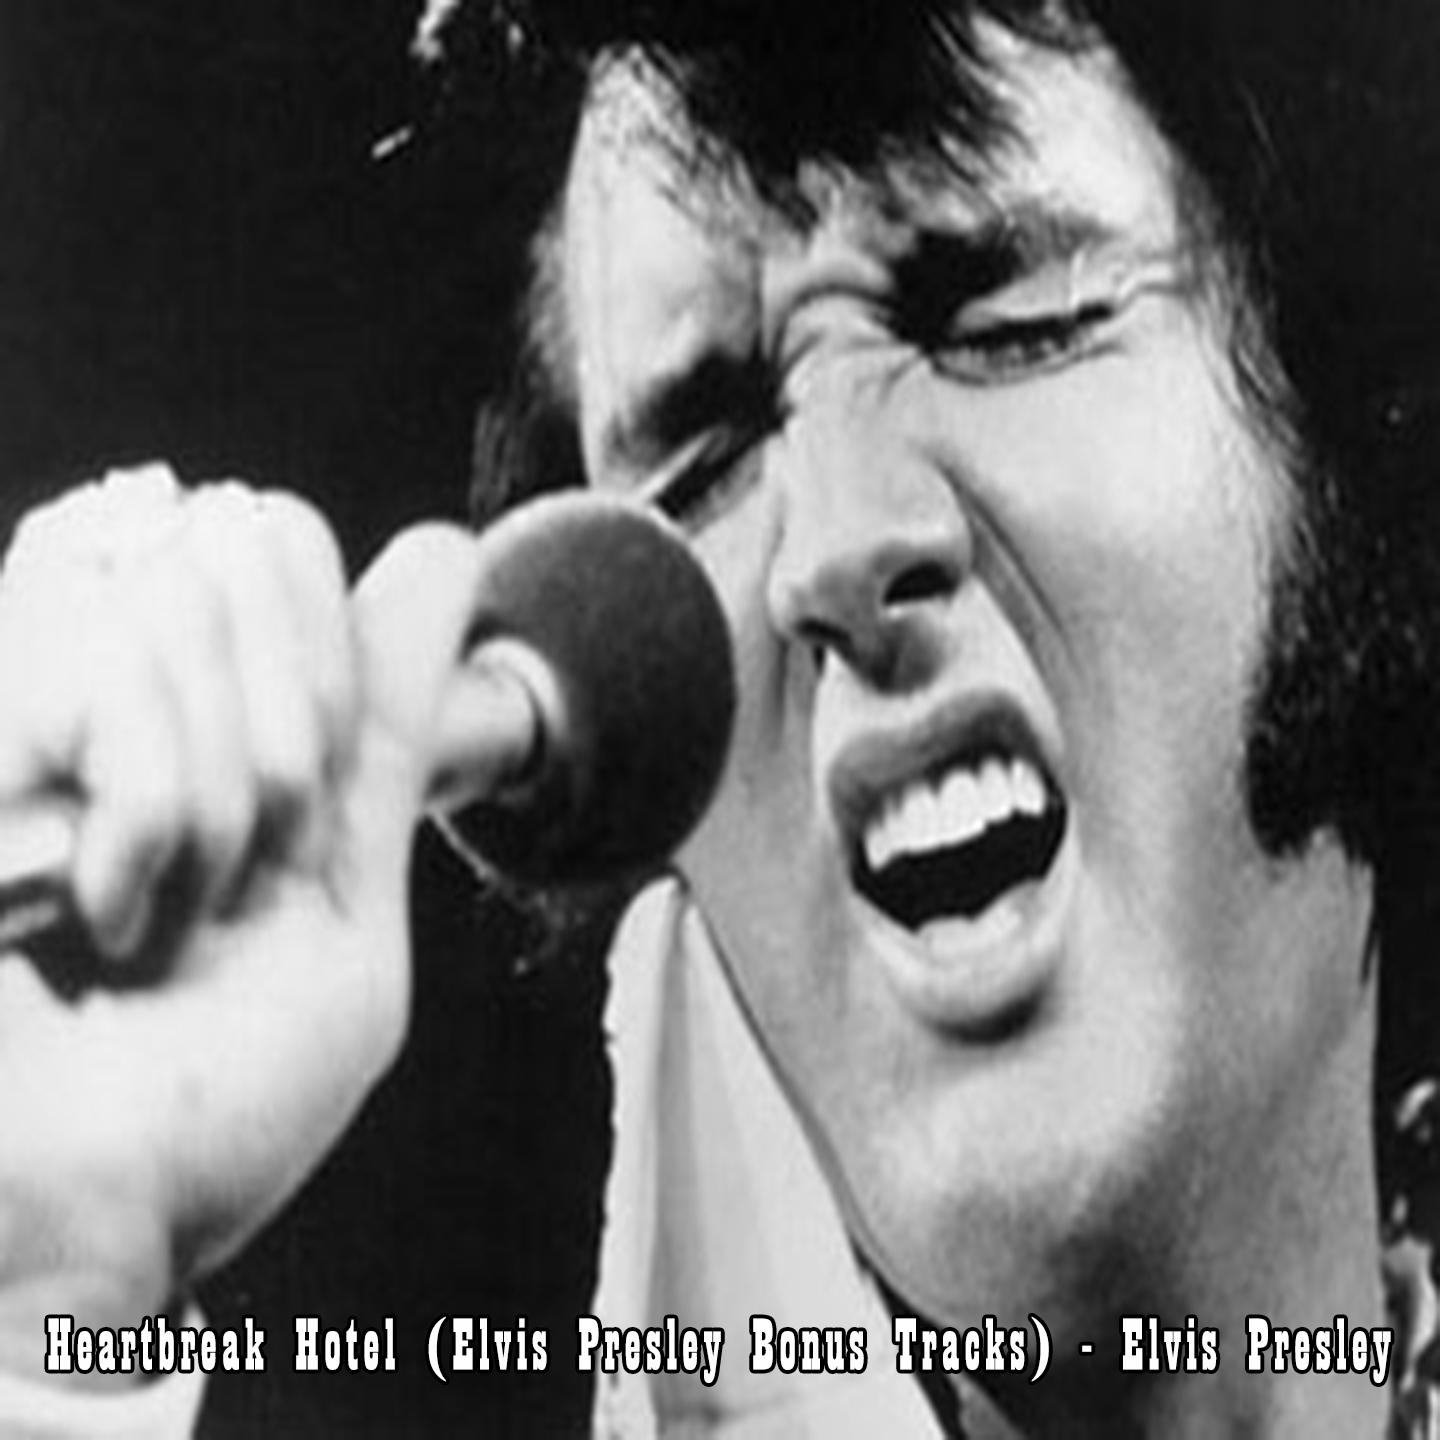 Heartbreak Hotel (Elvis Presley Bonus Tracks) - Elvis Presley